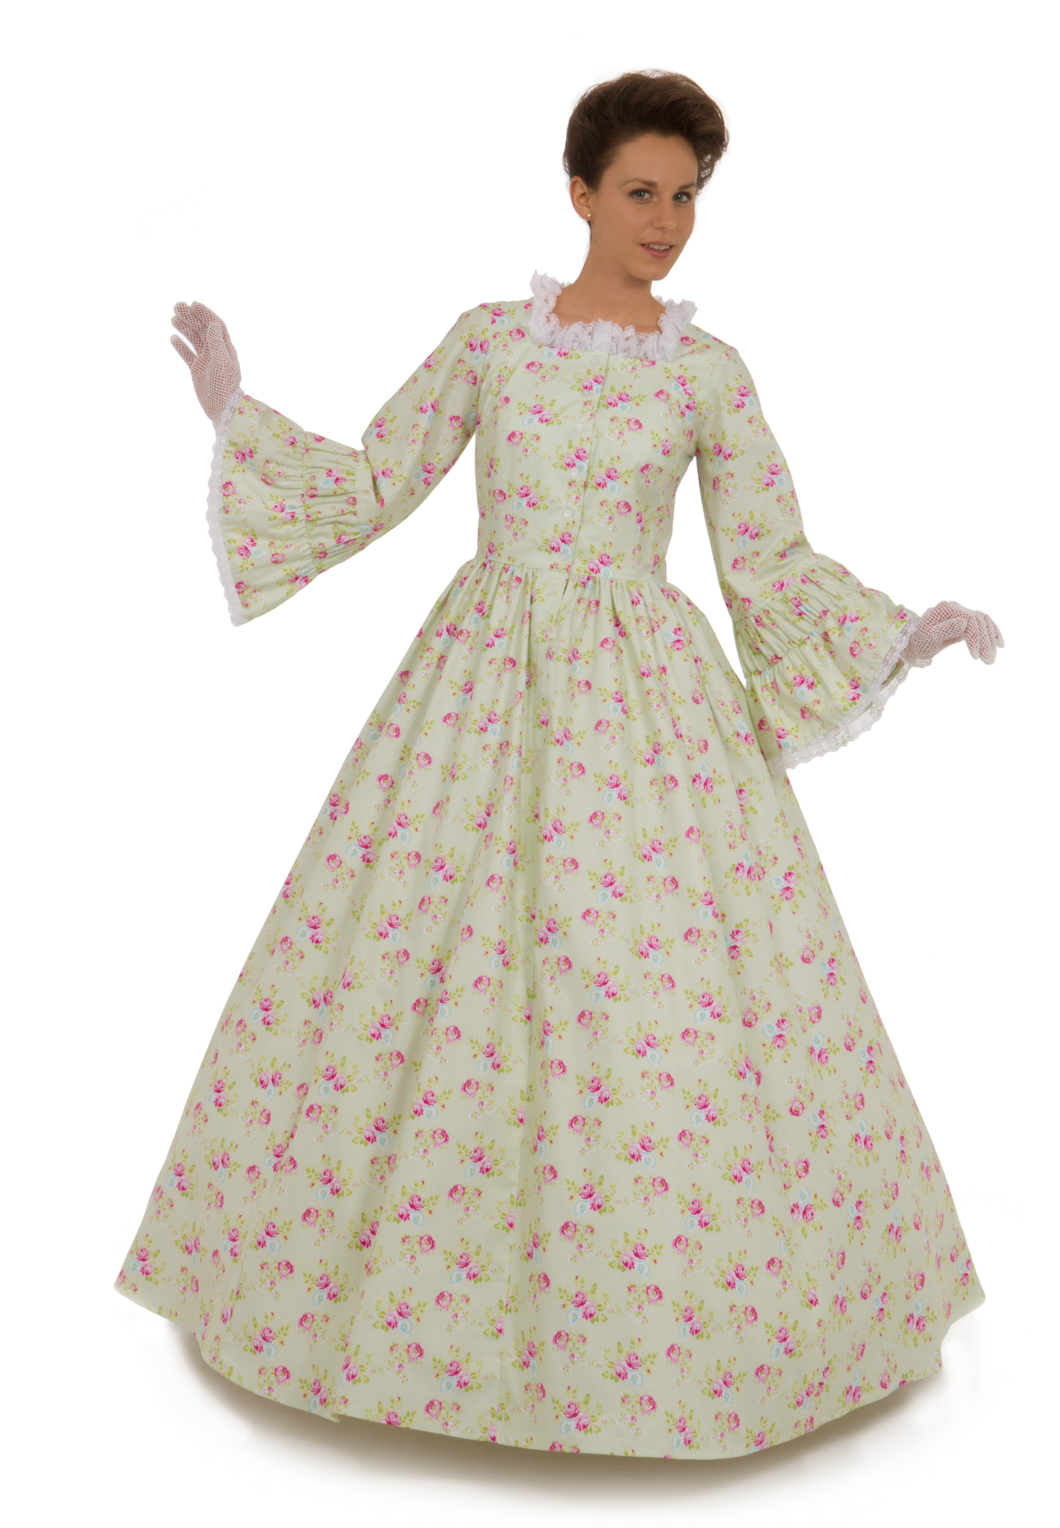 1800 victorian dresses